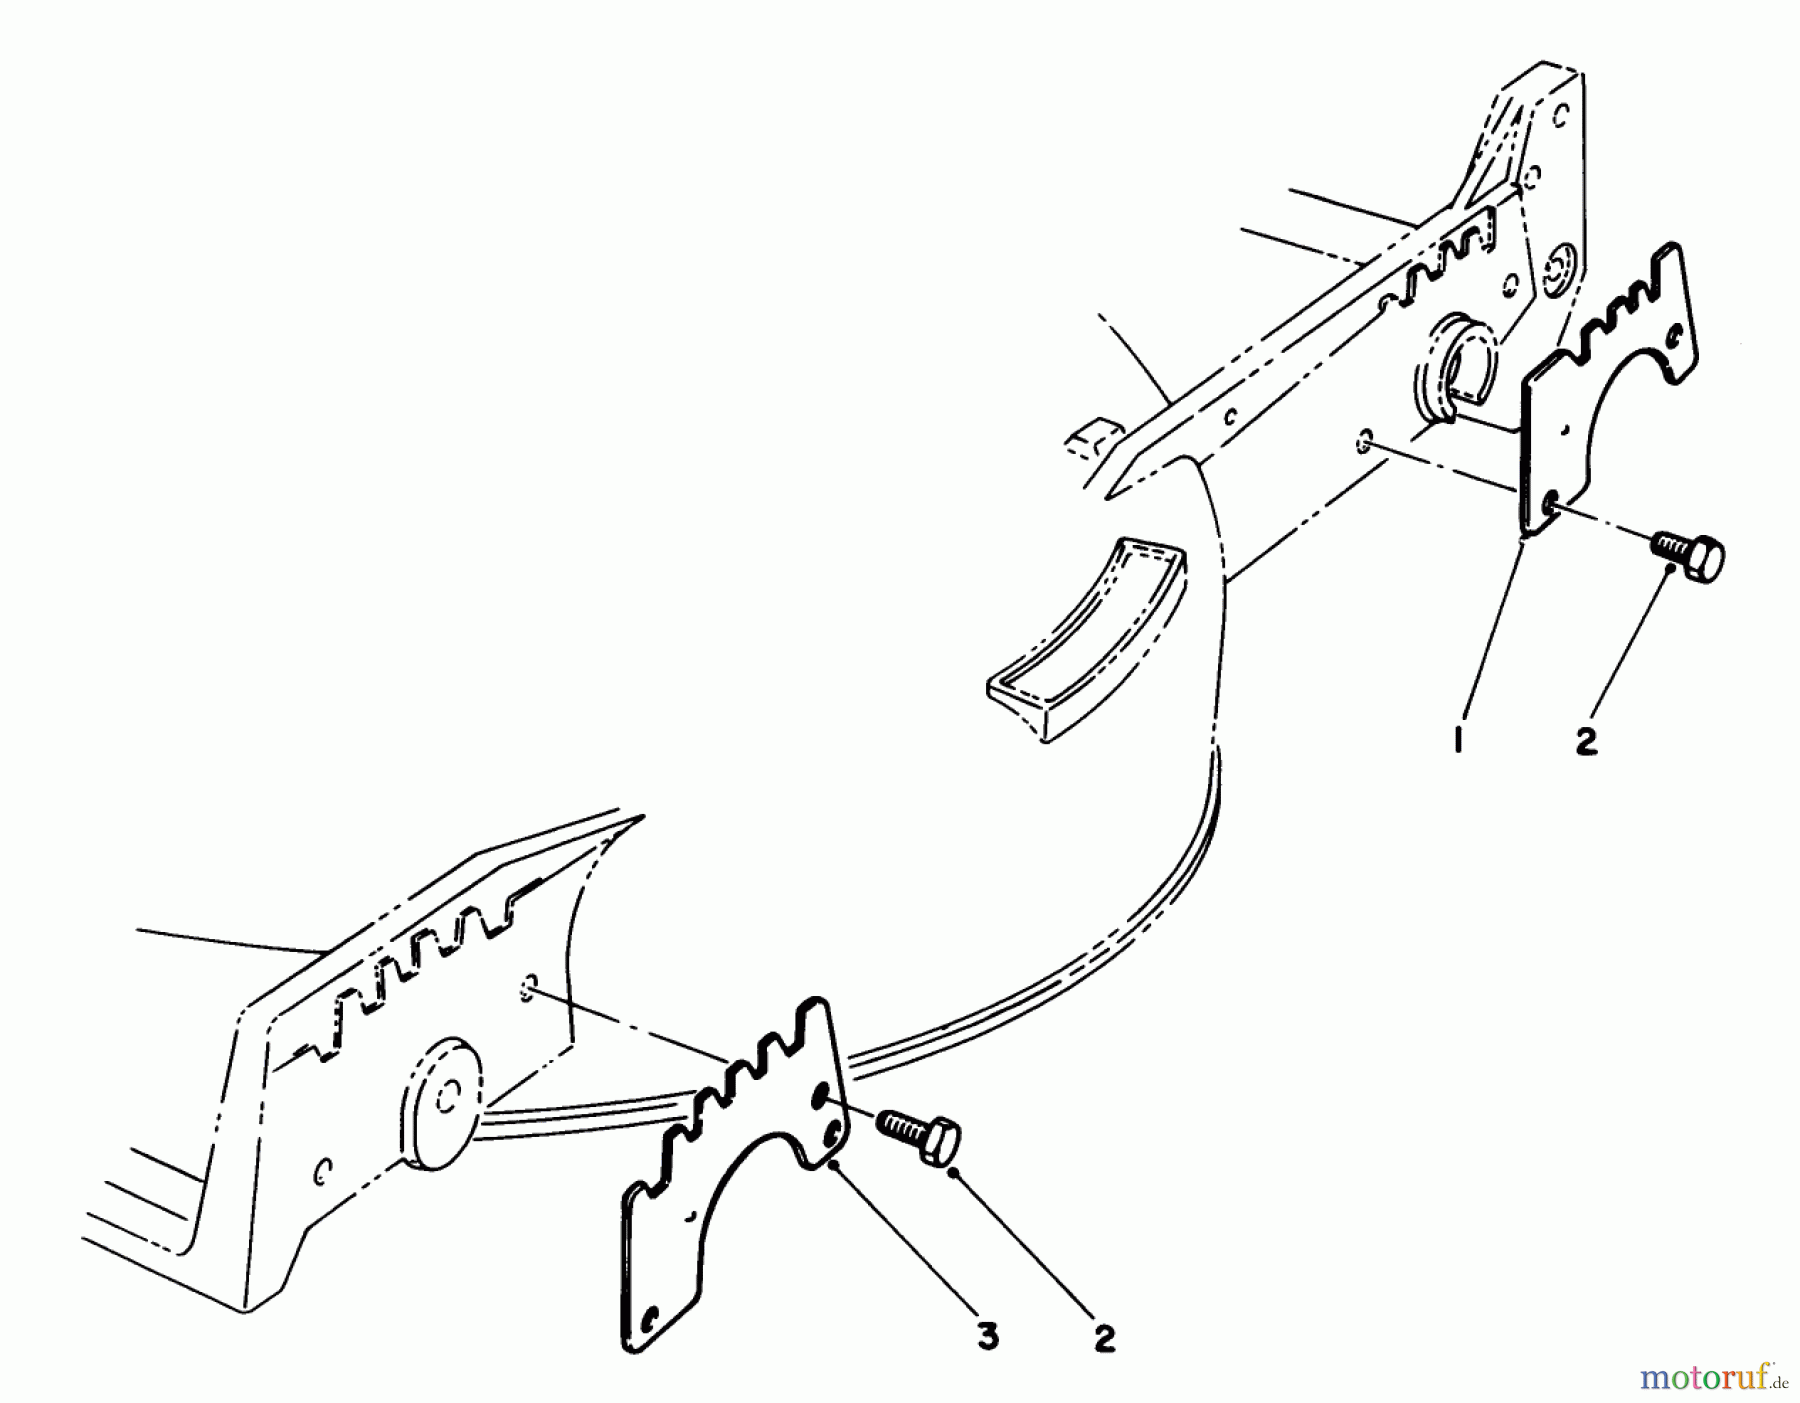  Toro Neu Mowers, Walk-Behind Seite 1 20629C - Toro Lawnmower, 1986 (6000001-6999999) WEAR PLATE KIT NO. 49-4080 (OPTIONAL)